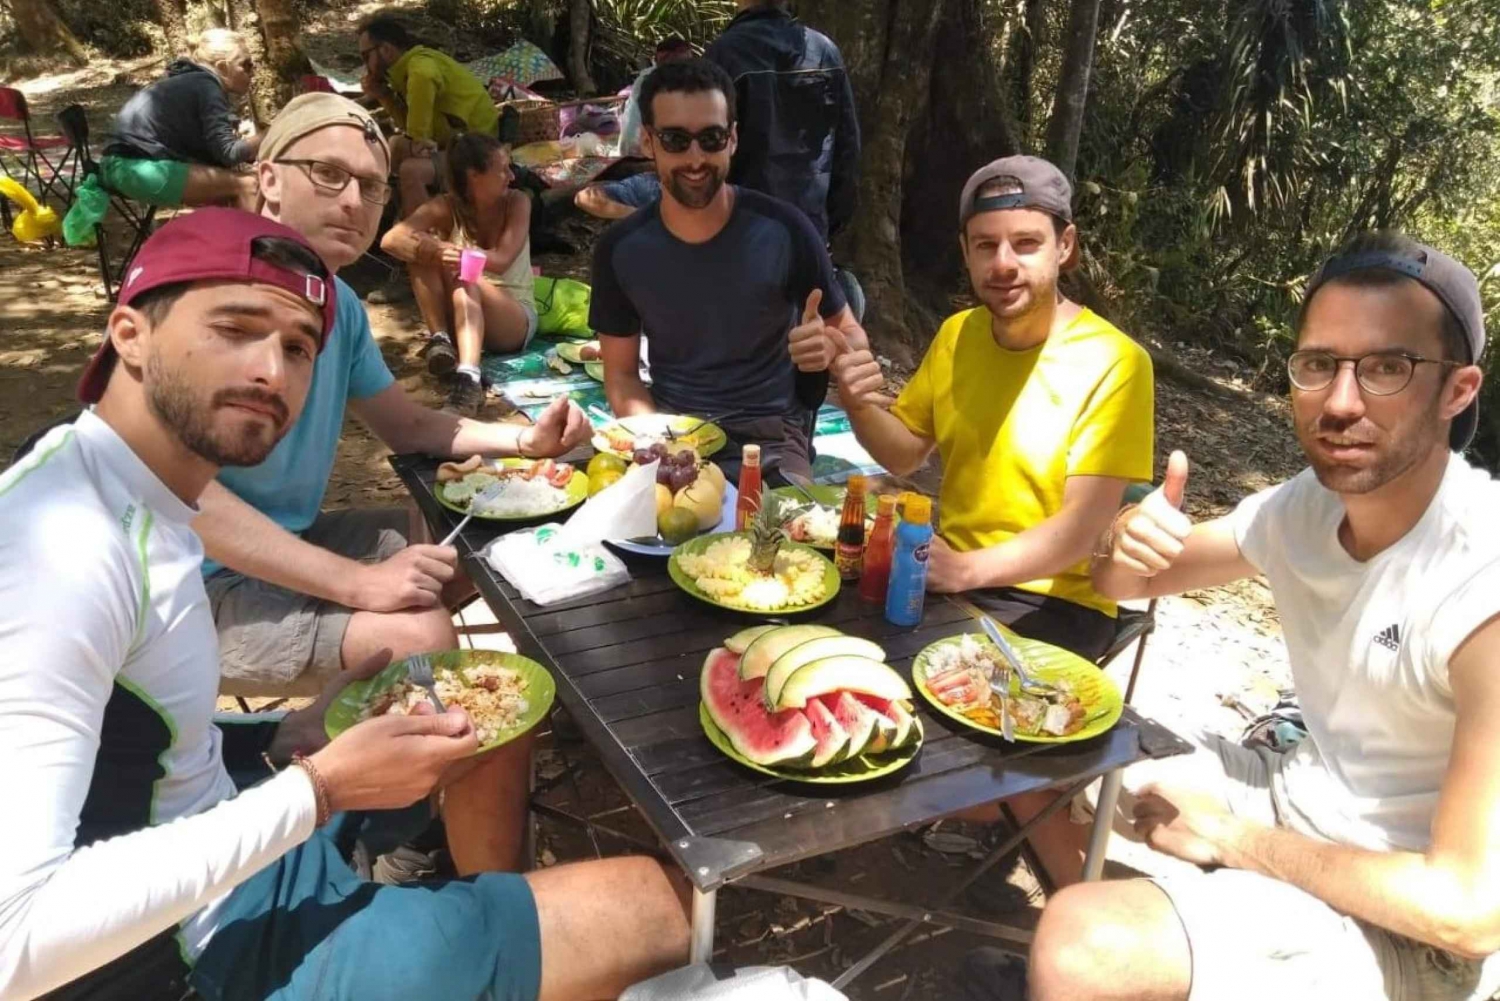 3 Days Rinjani Trekking Tour to Summit, Lake, Toran Trail